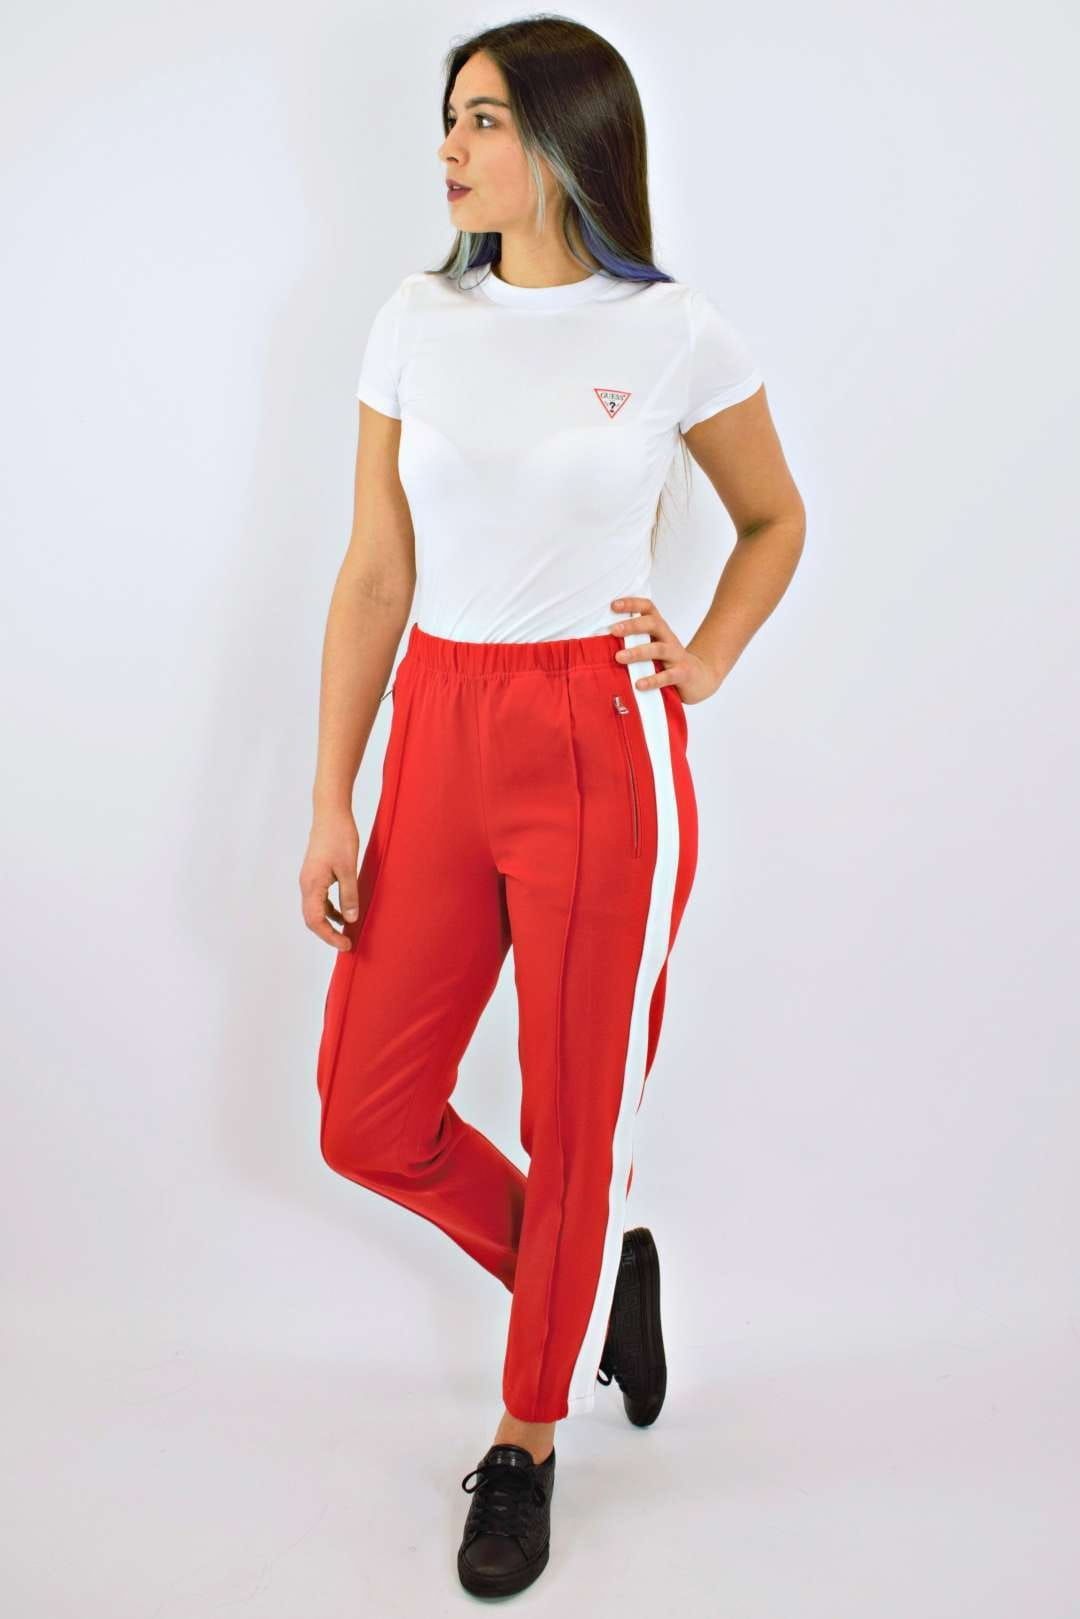 Calvin Klein dresy eleganckie czerwone damskie M spodnie vitkac